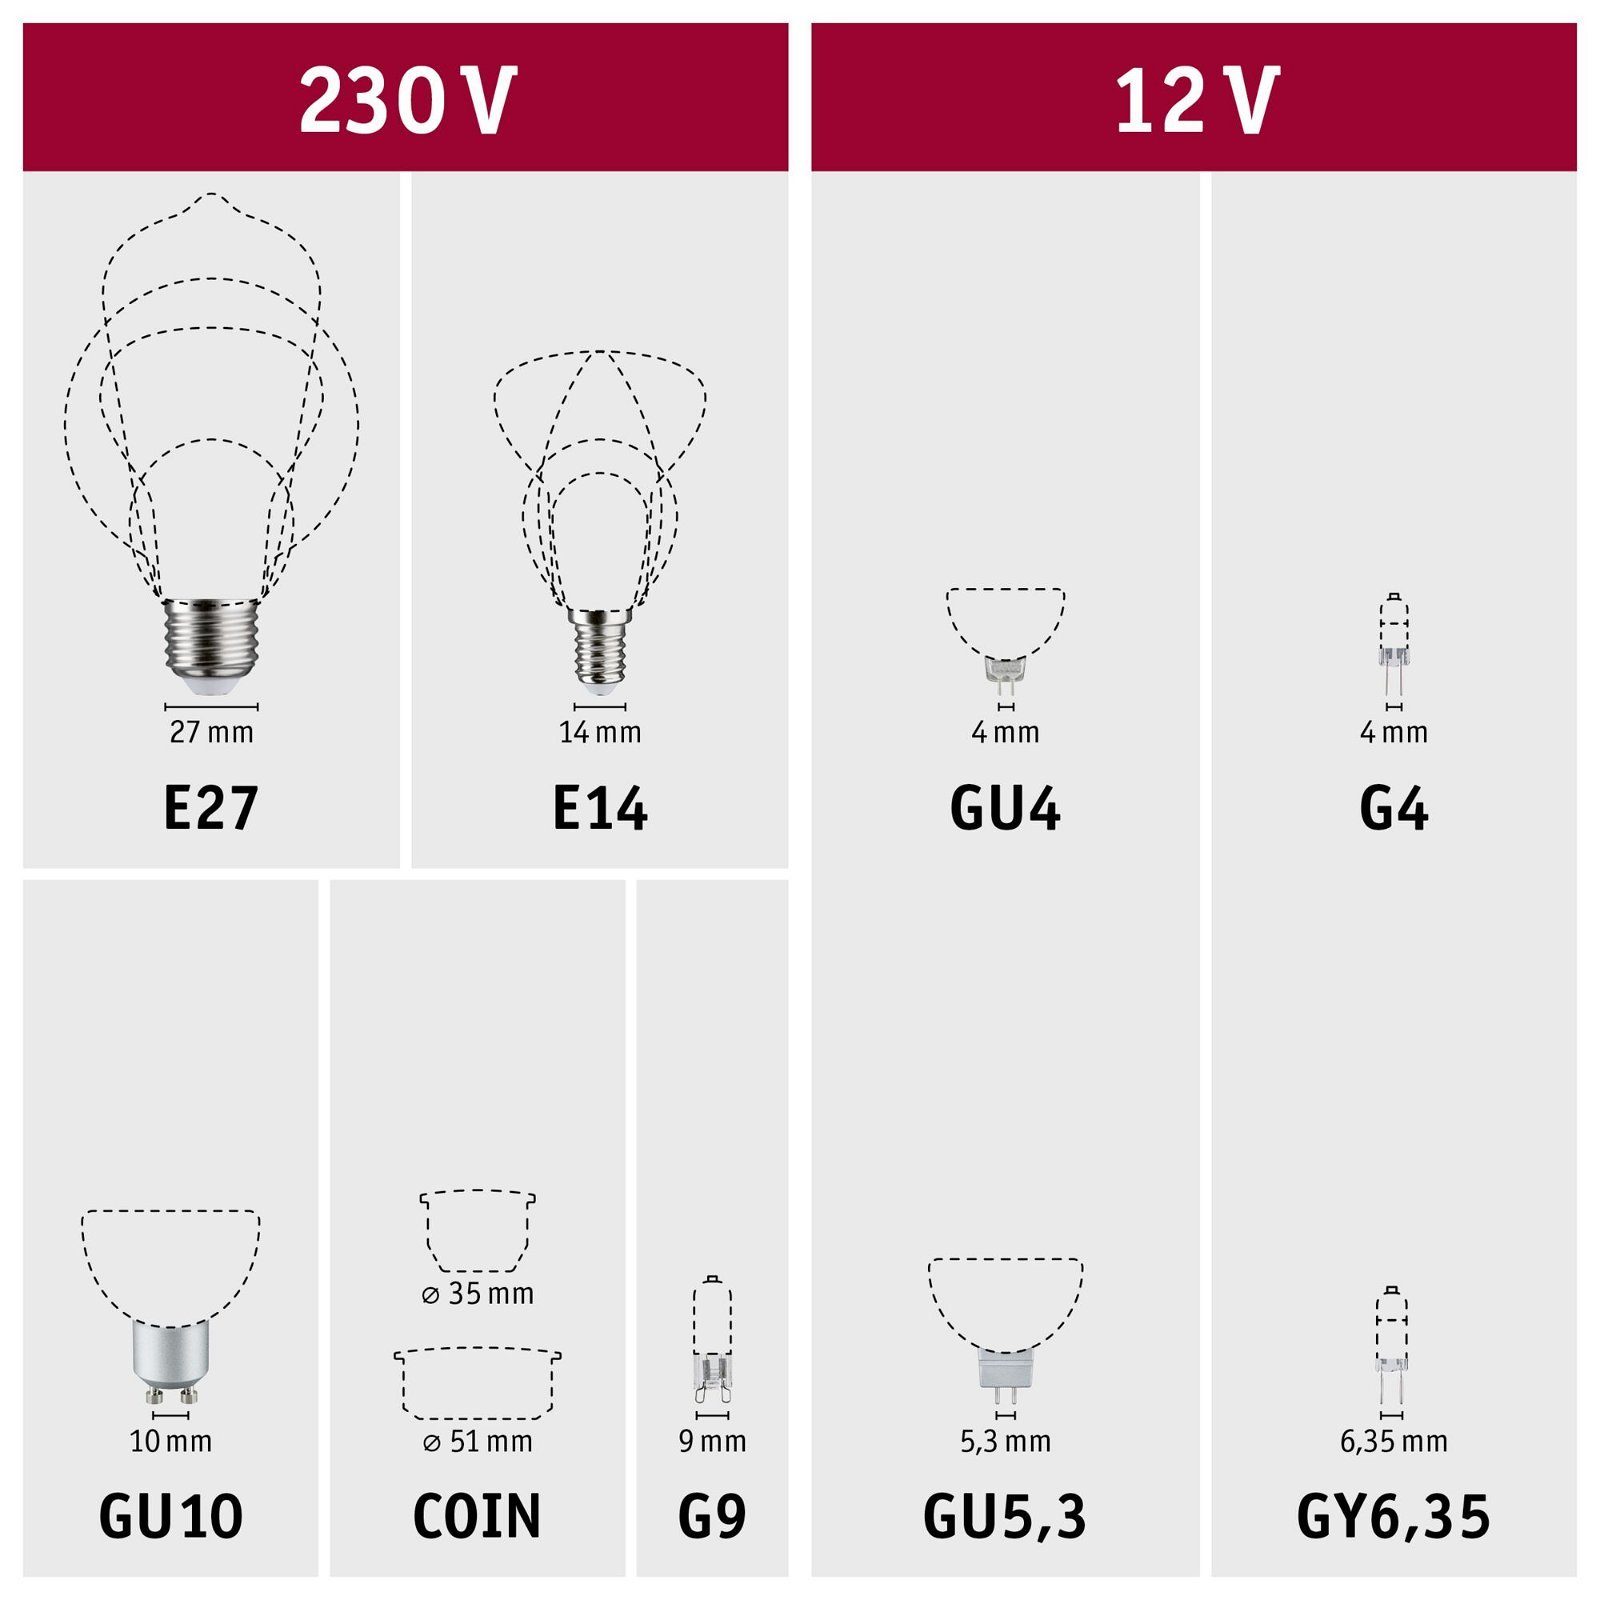 Paulmann LED-Leuchtmittel Smart Filament 3er-Pack 470lm gold Tageslichtweiß 2200K-6500K G95 230V, St., 1